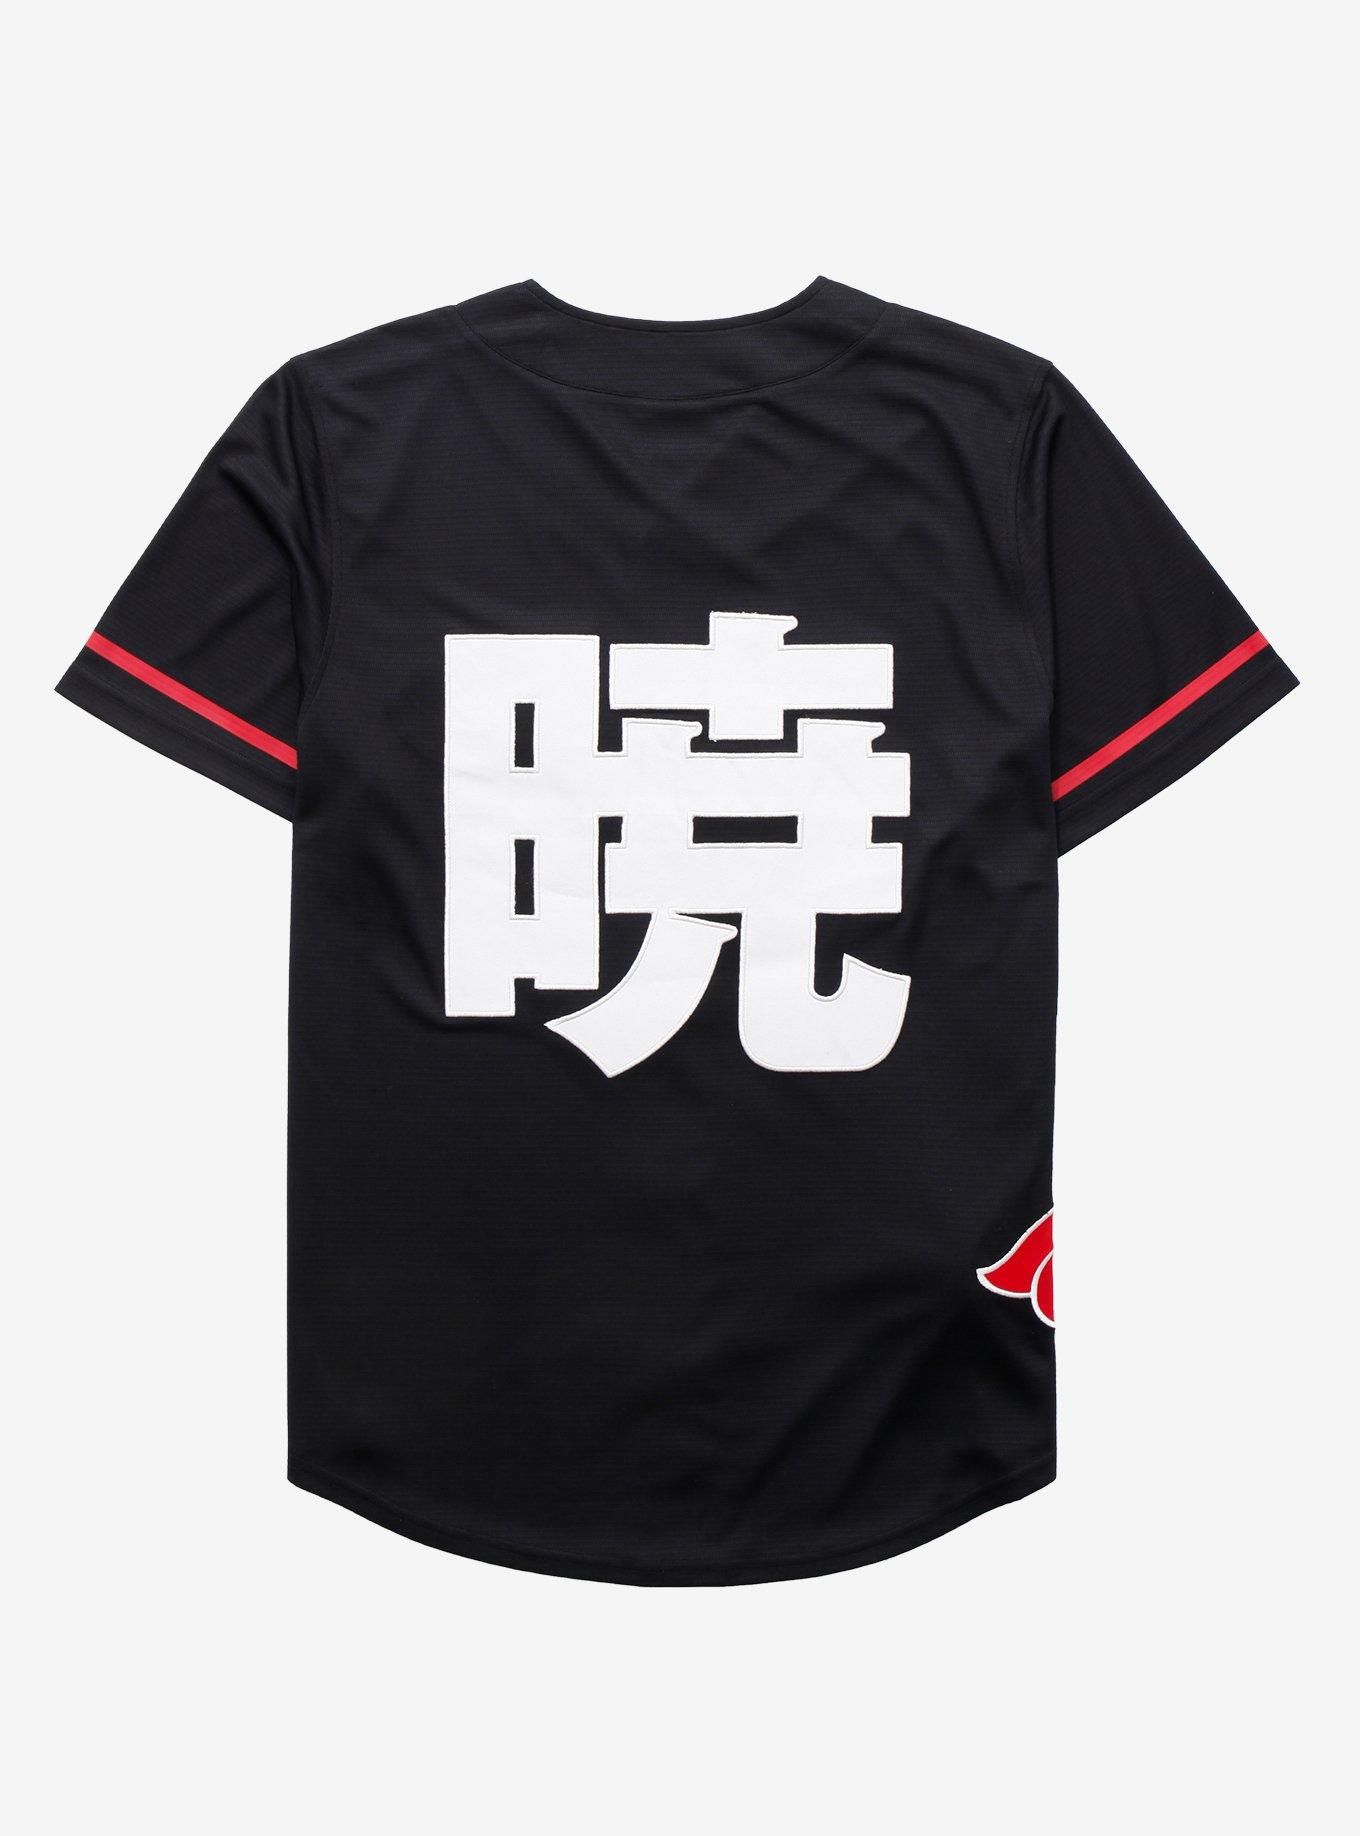 Chicago White Sox Naruto Anime Akatsuki Baseball Jersey No Piping